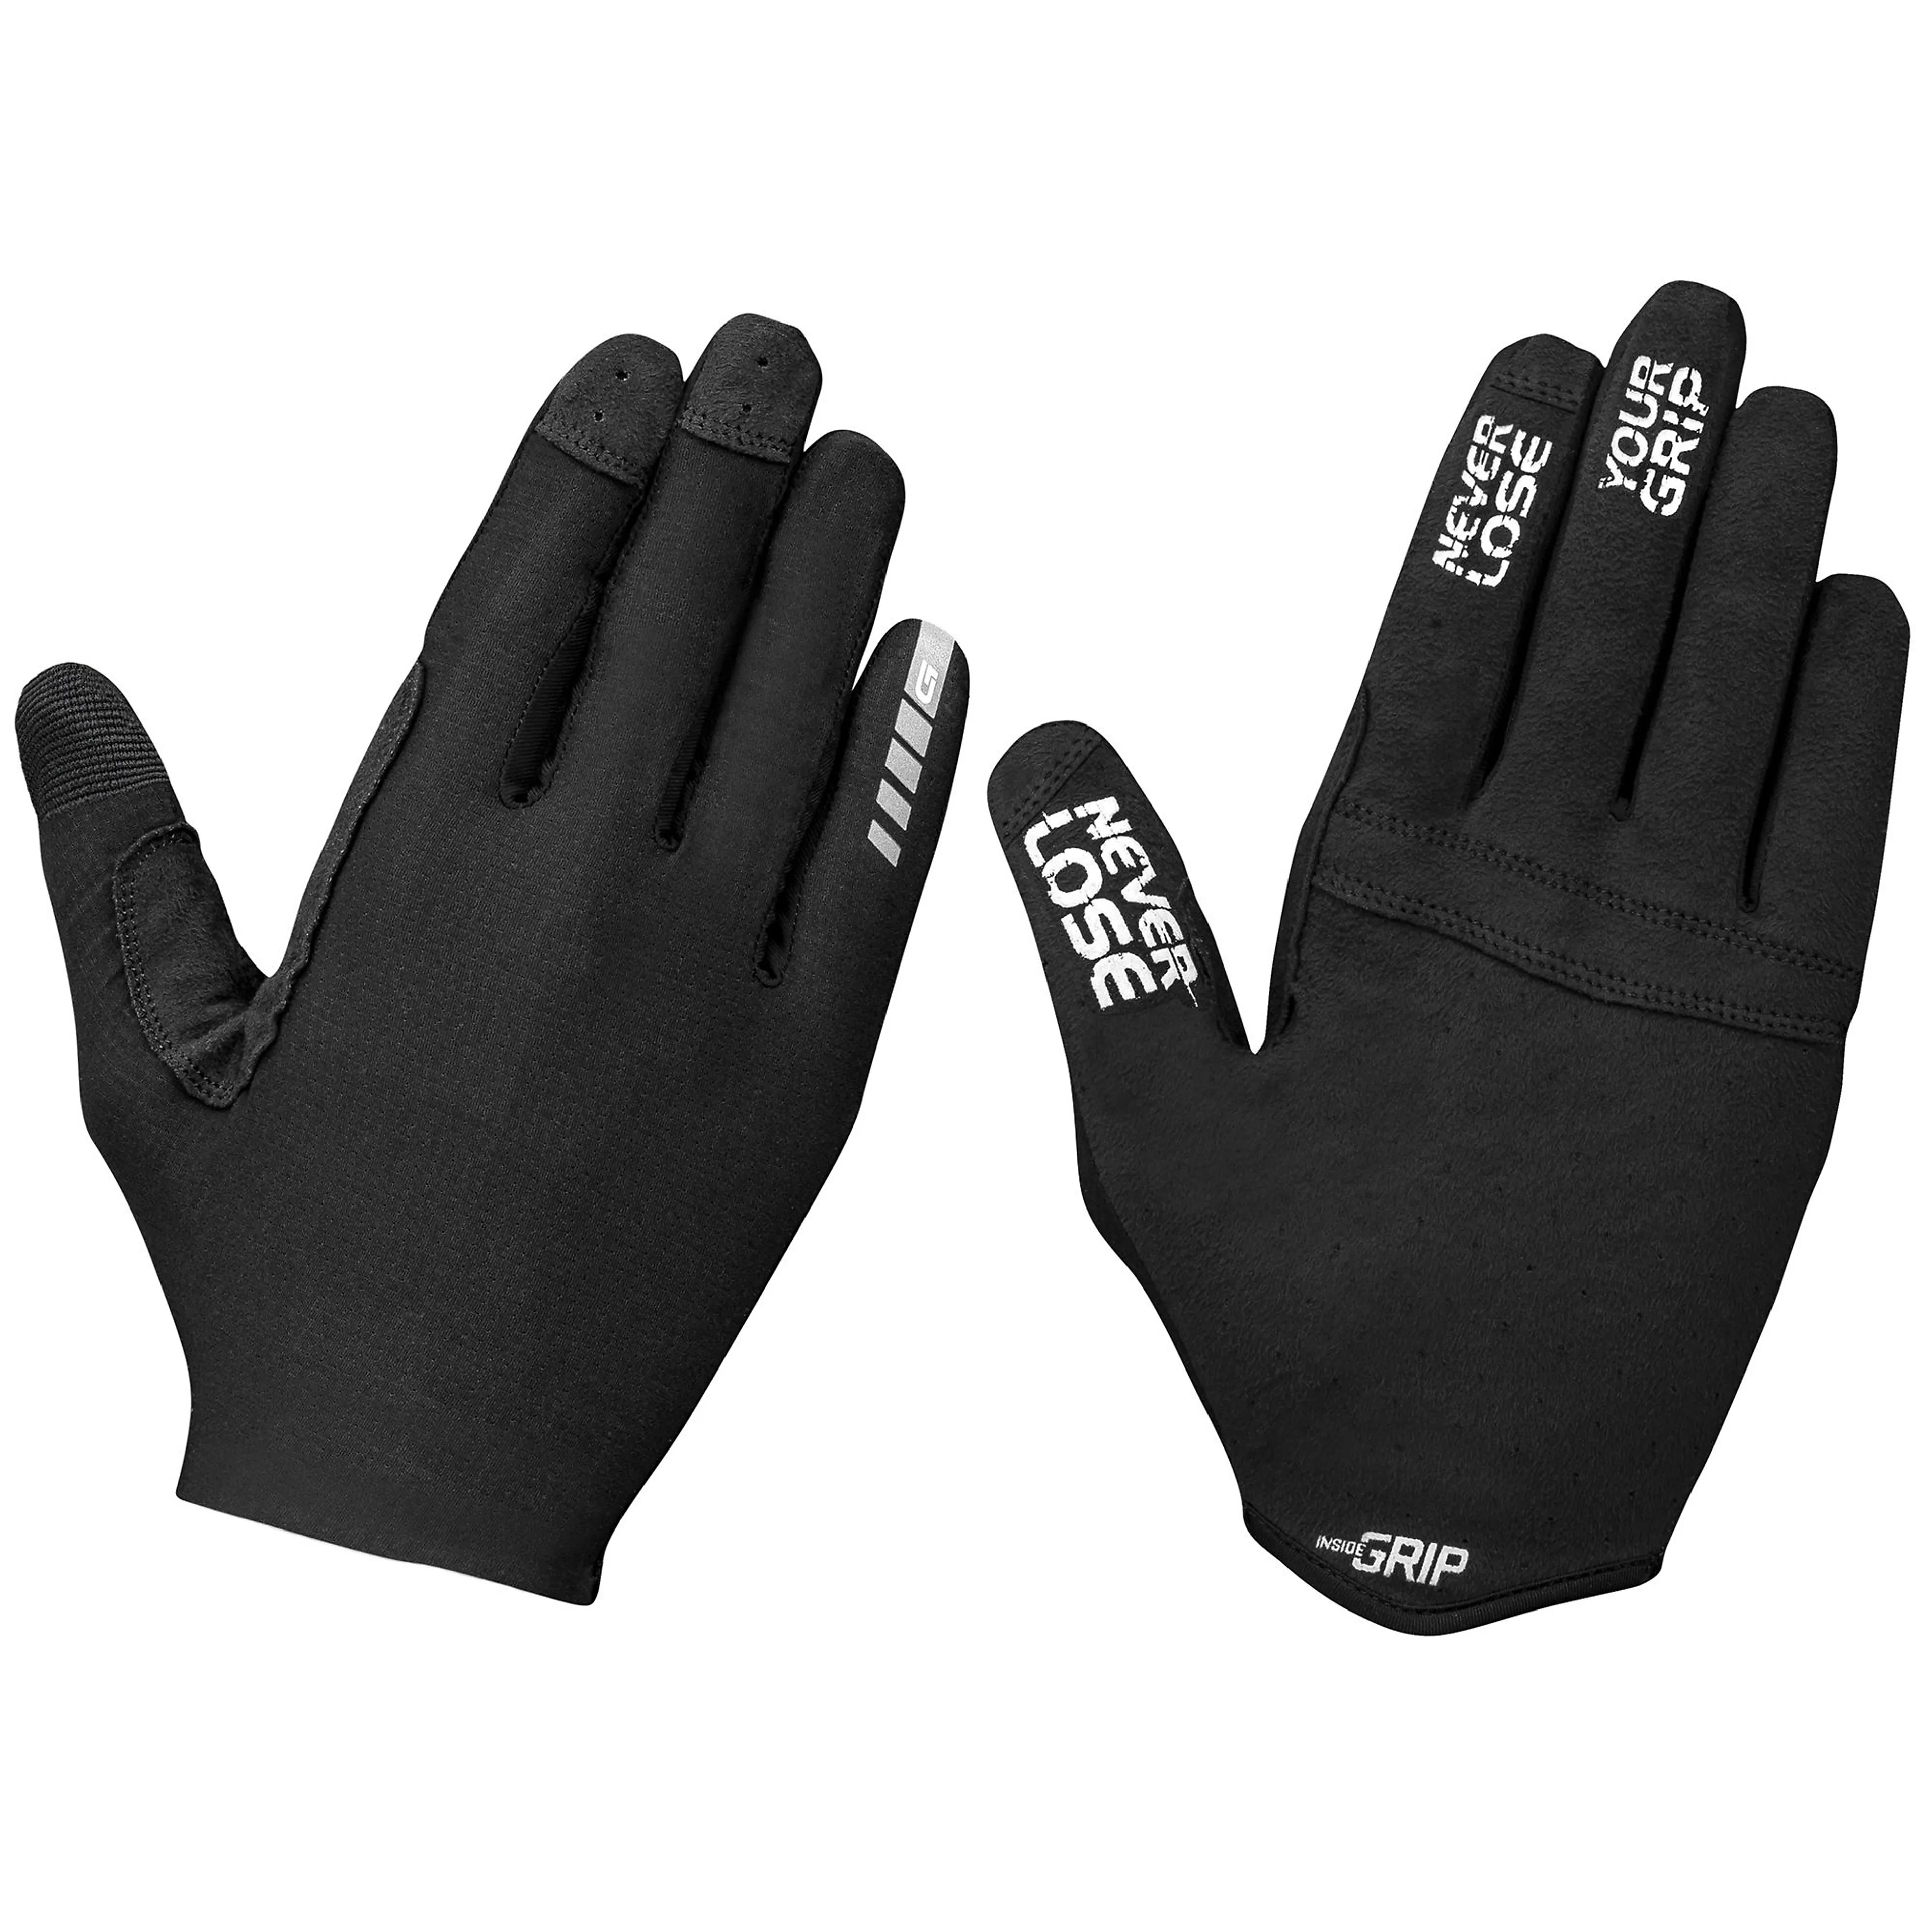 Aerolite InsideGrip Long Finger Glove